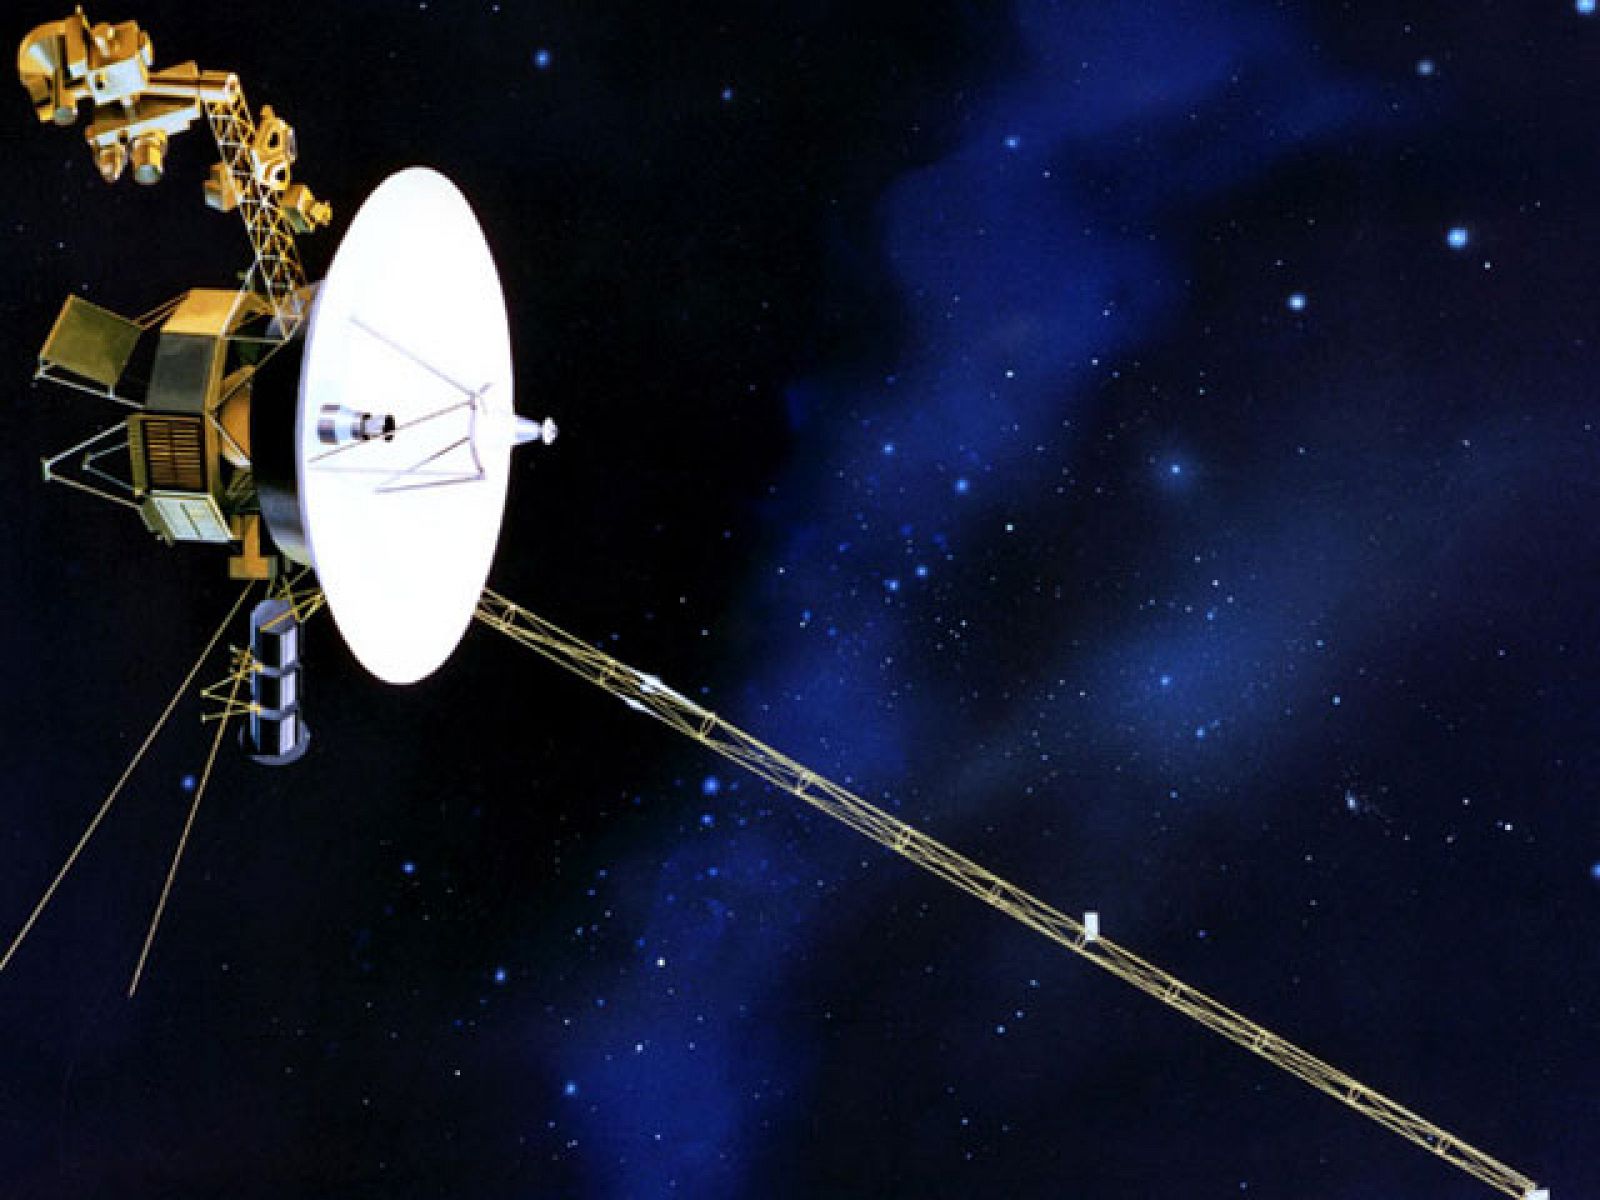 La sonda espacial "Voyager 1" cumple más de 33 años en el espacio